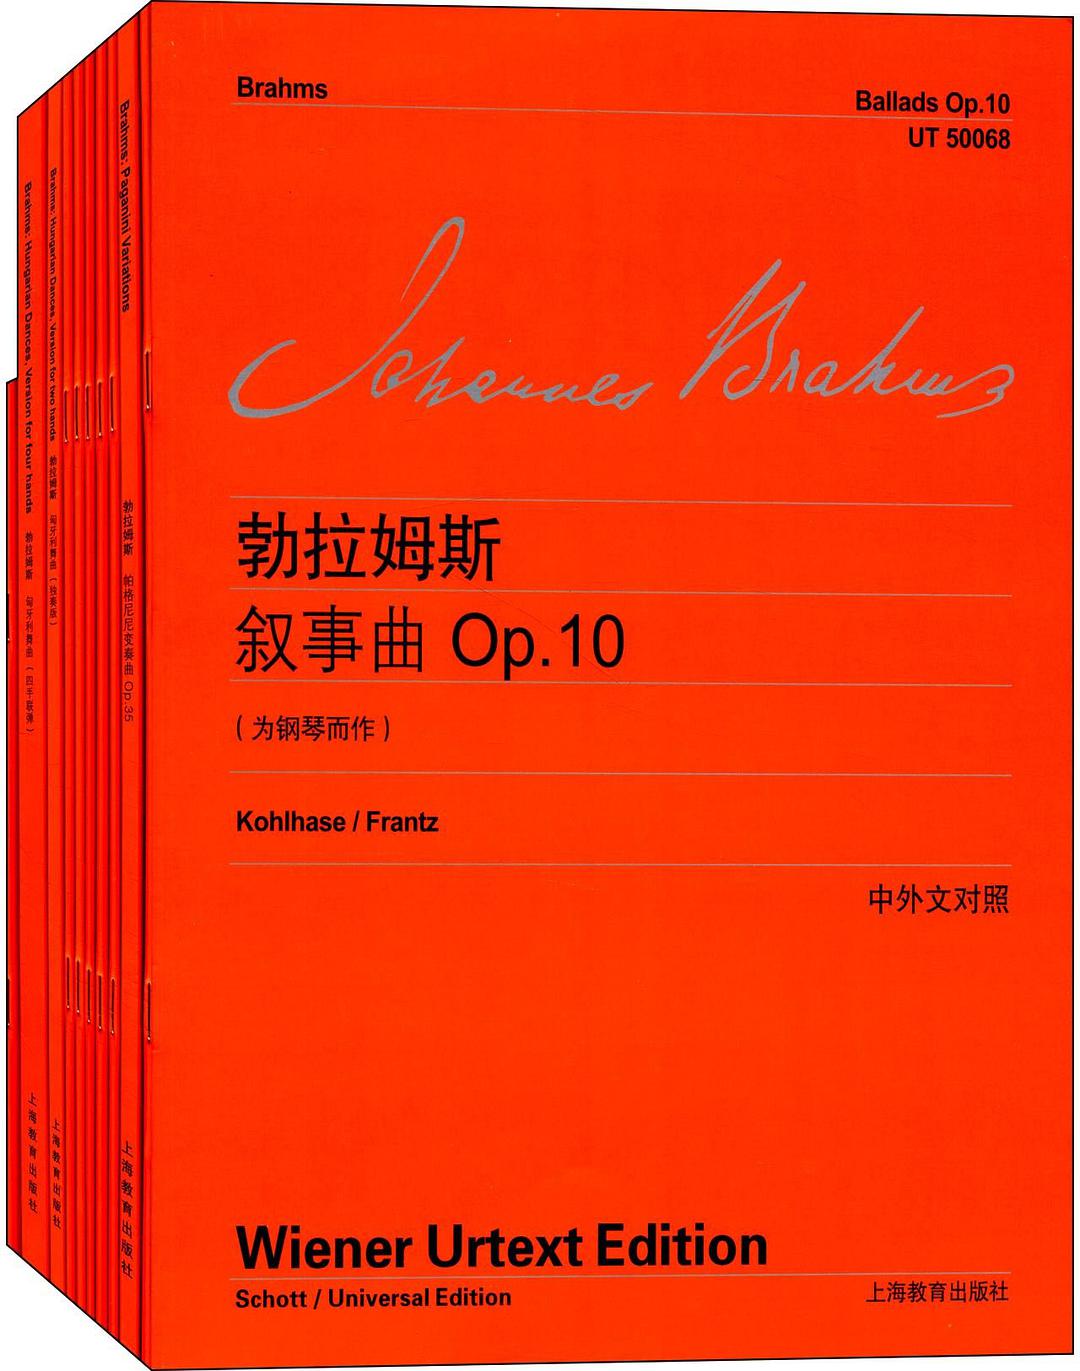 约翰内斯·勃拉姆斯叙事曲 Op.10 为钢琴而作 Op.10 fur klavier 维也纳原始版